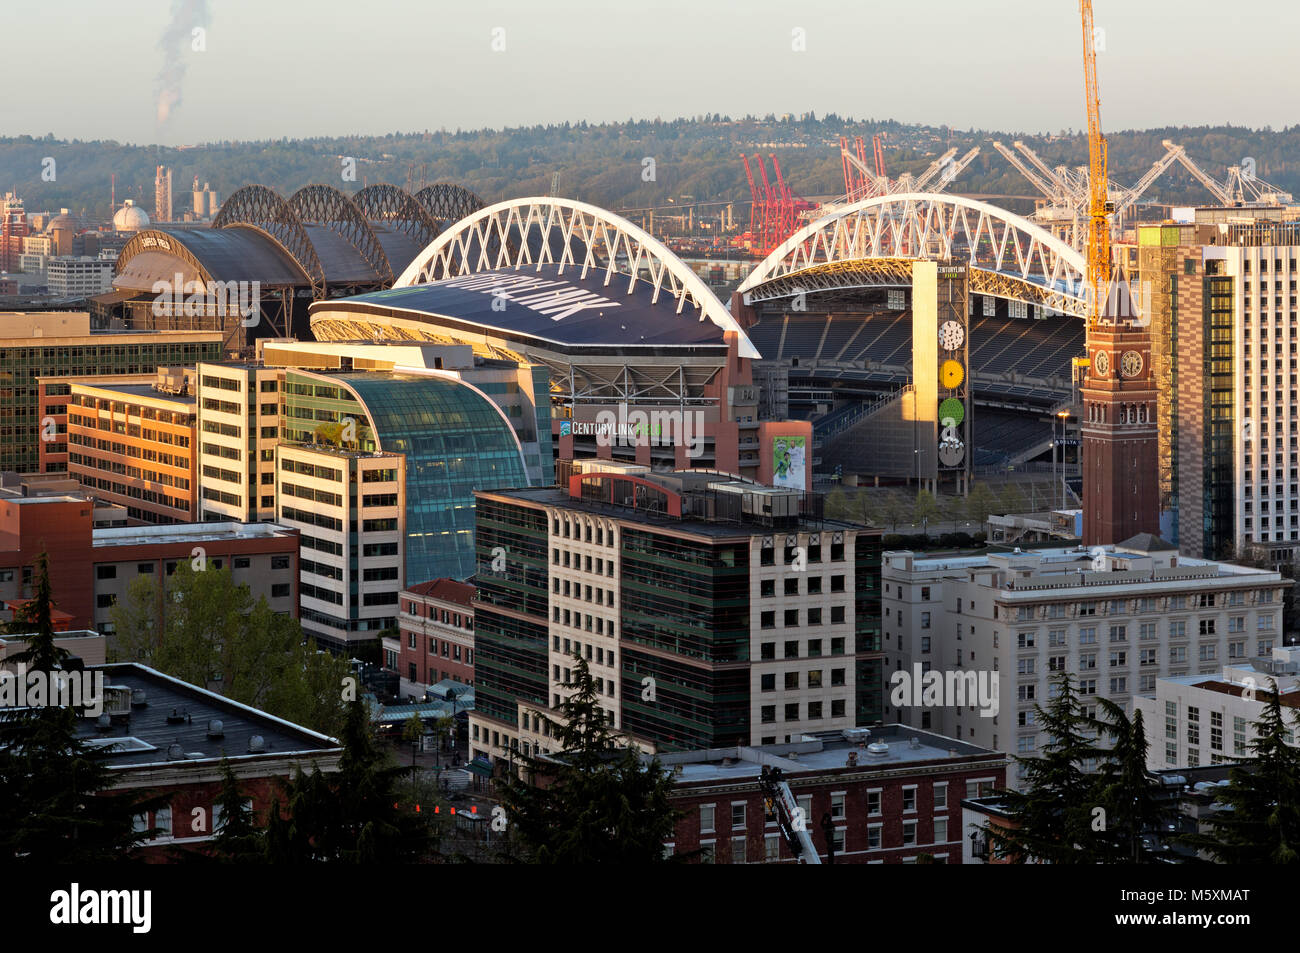 WASHINGTON - Sonnenaufgang Blick über das Internationale Viertel, die King Street Clock Tower, CenturyLink Feld und Safeco Field zu West Seattle. Stockfoto